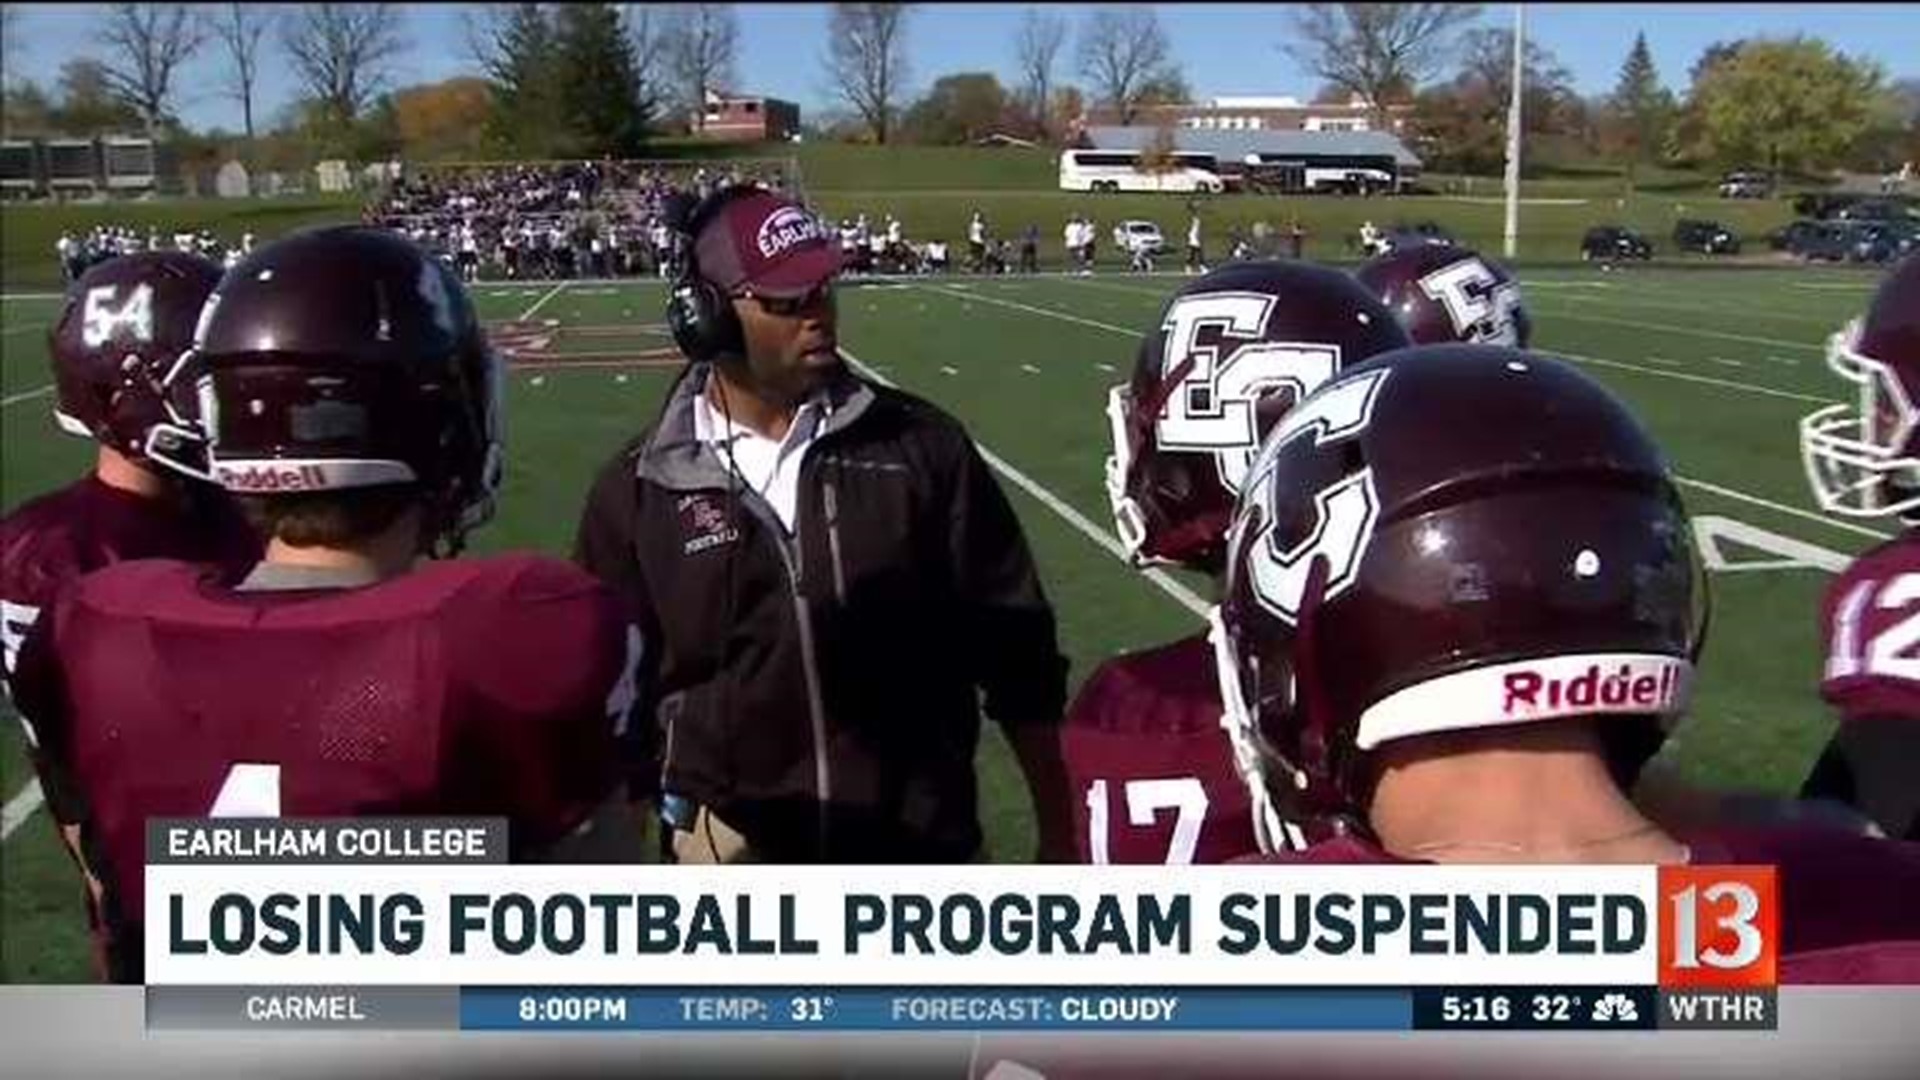 Losing football program suspended